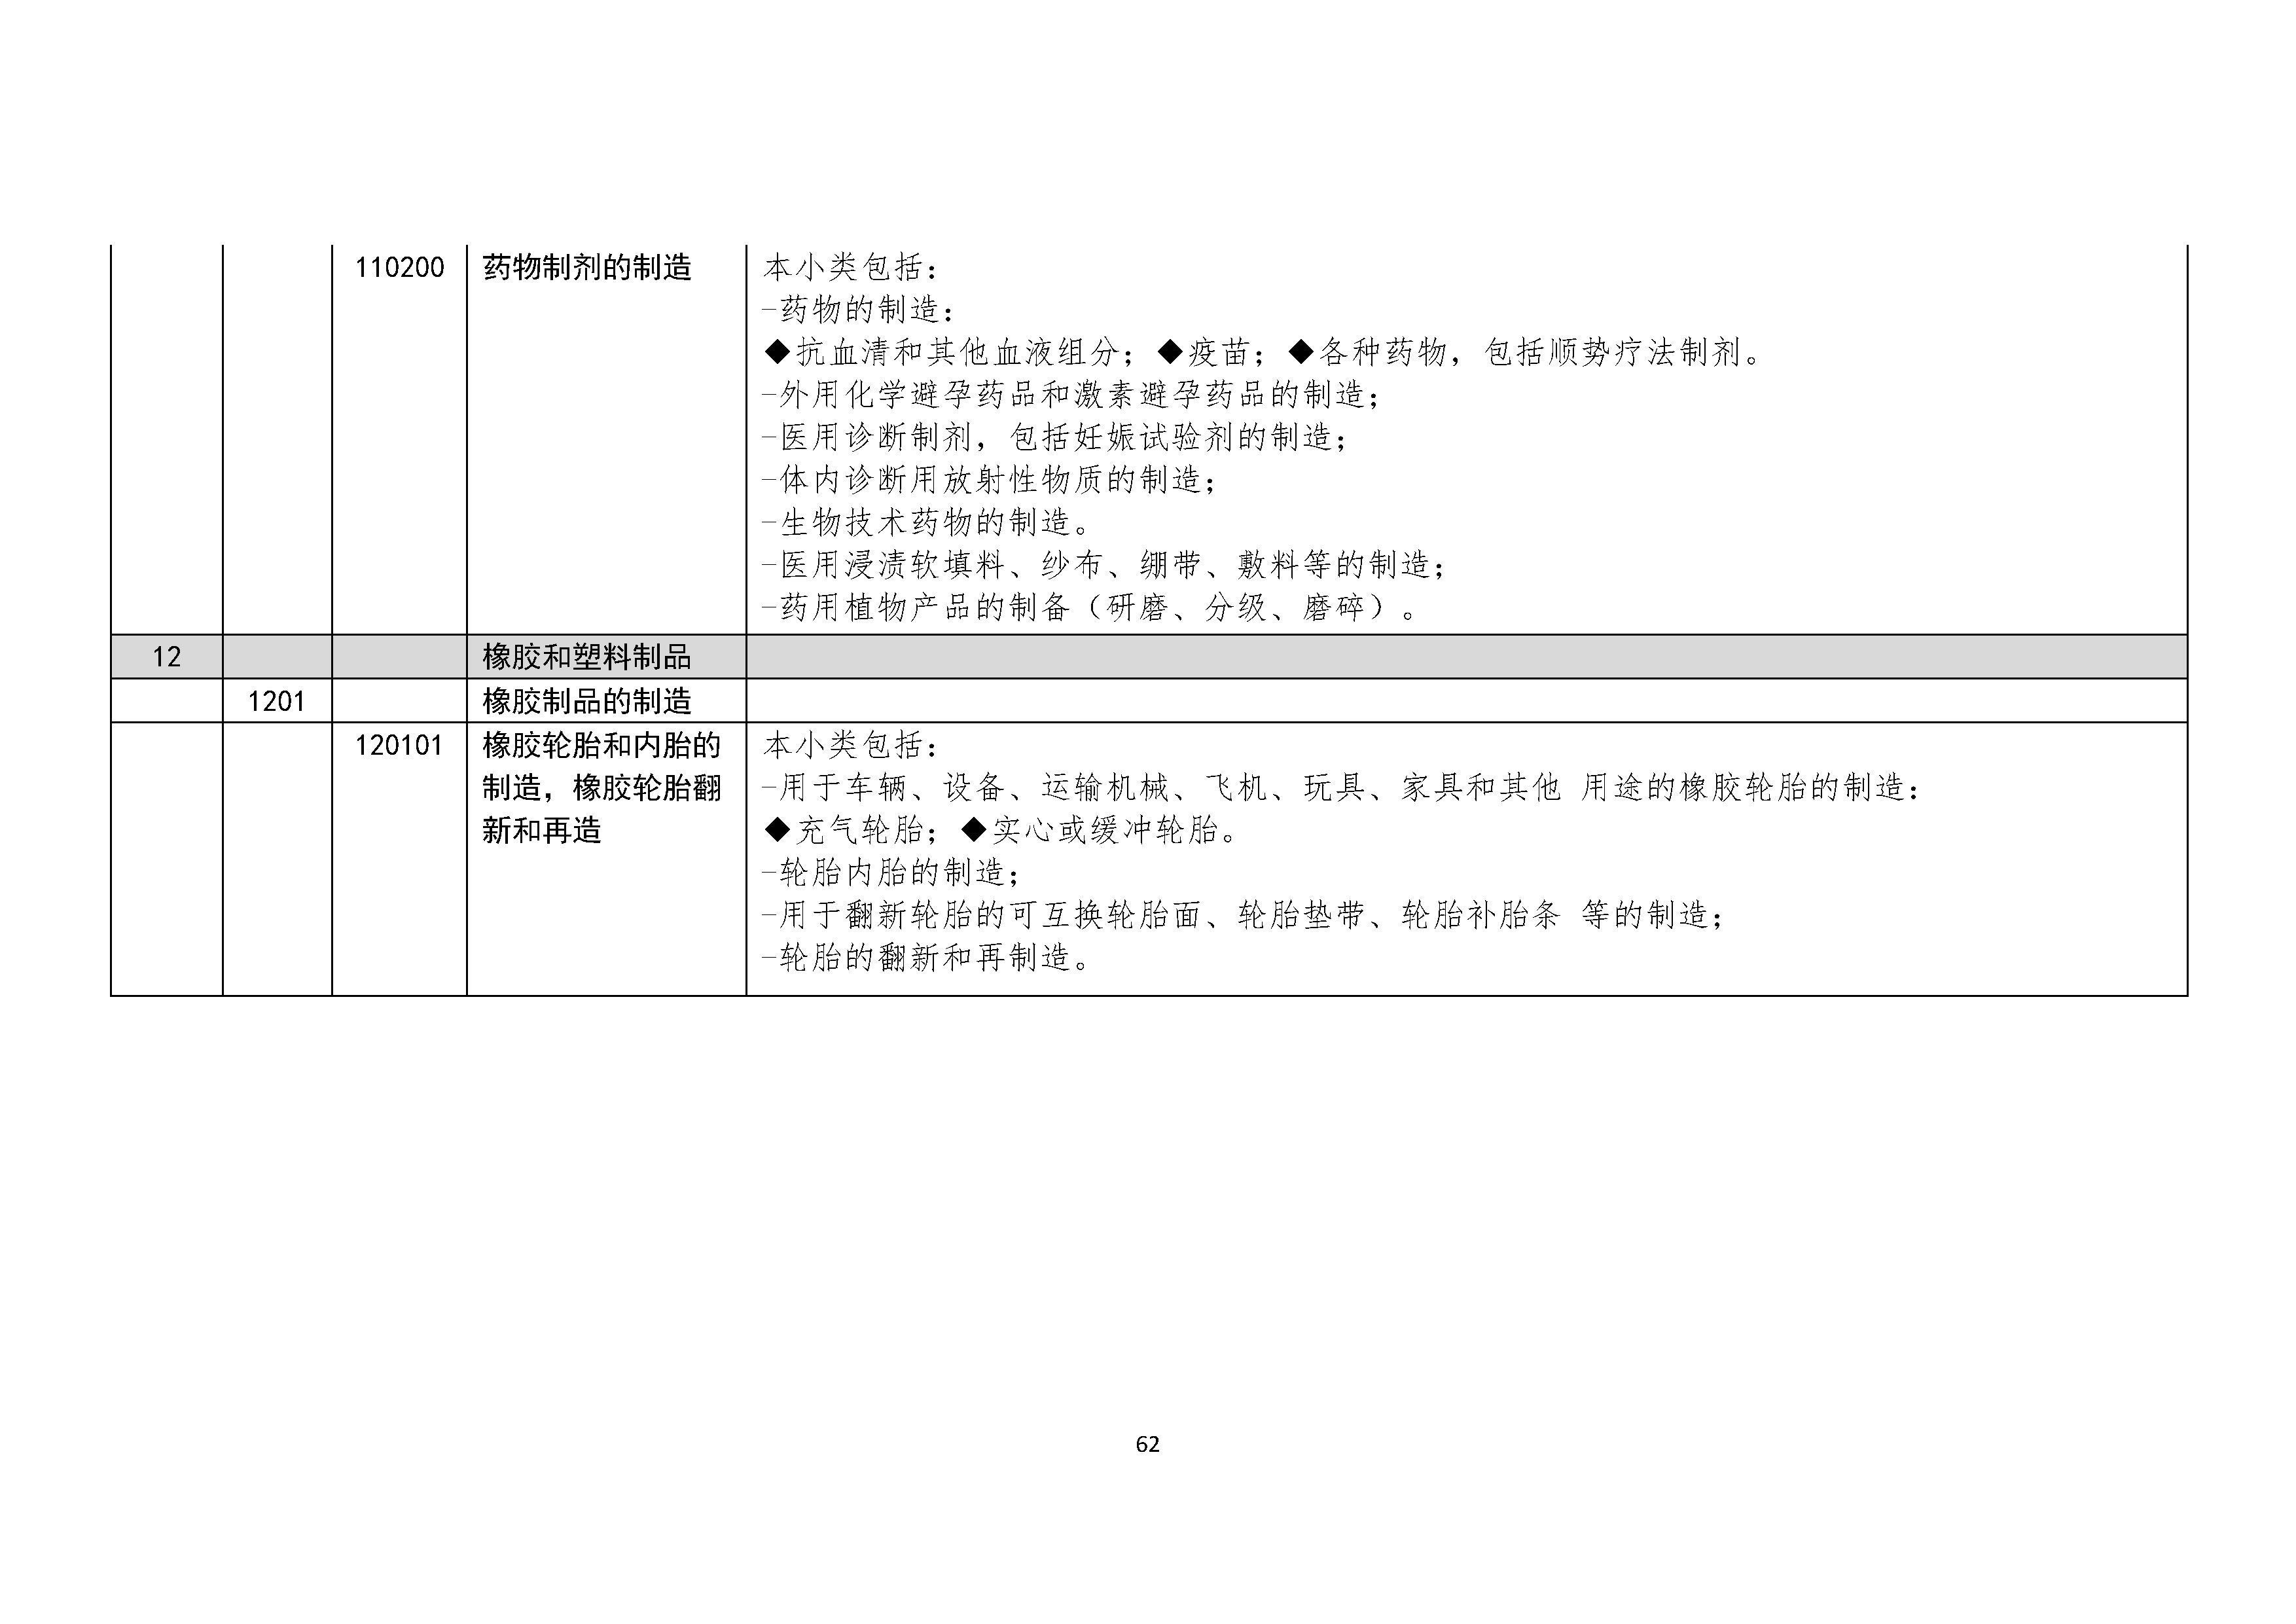 B.6《中国核能行业协会供应商评价供应商分类及产品专业范围划分规定》_页面_063.png